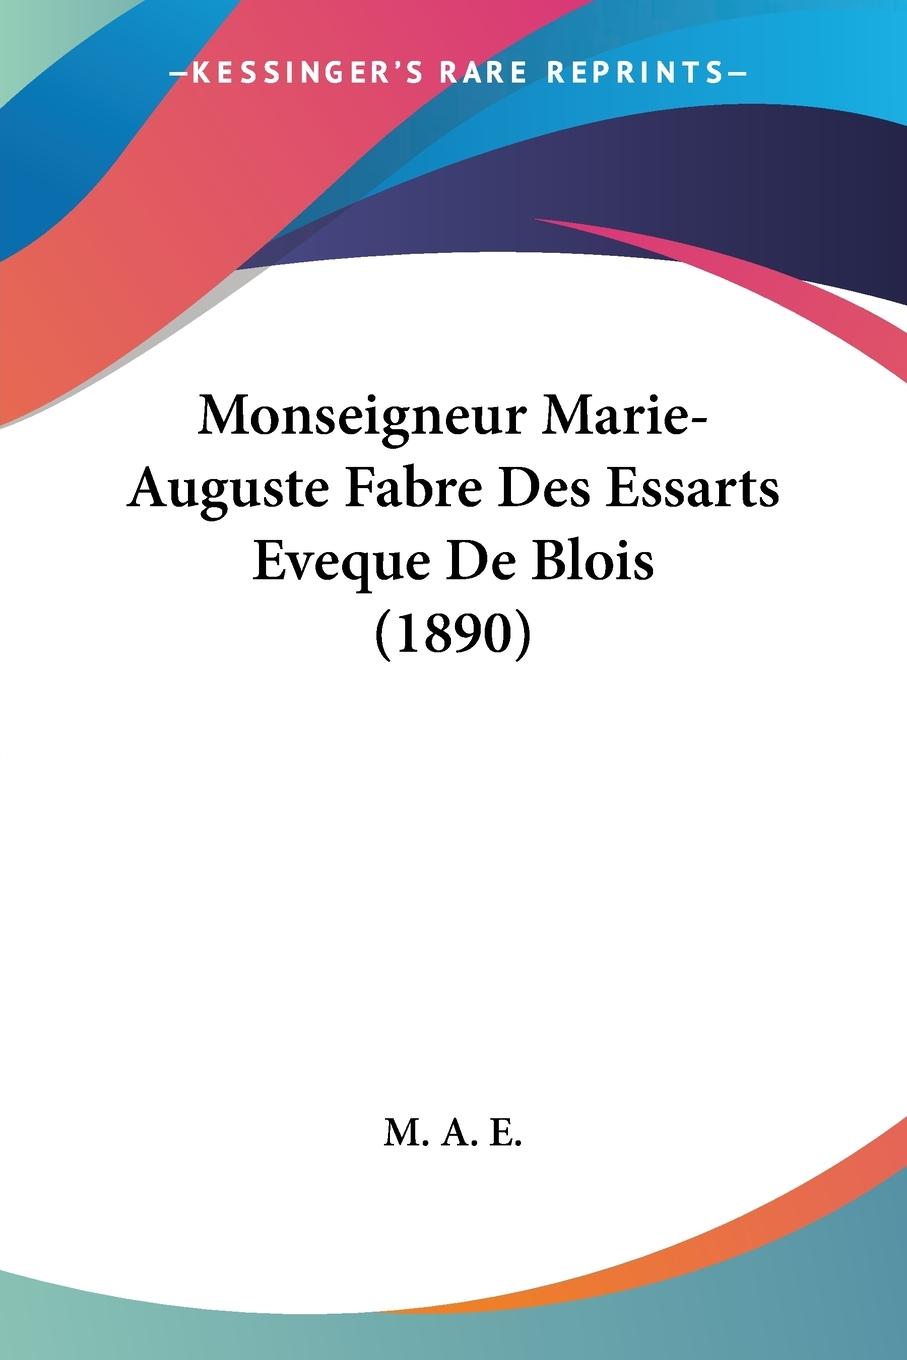 Monseigneur Marie-Auguste Fabre Des Essarts Eveque De Blois (1890) - M. A. E.